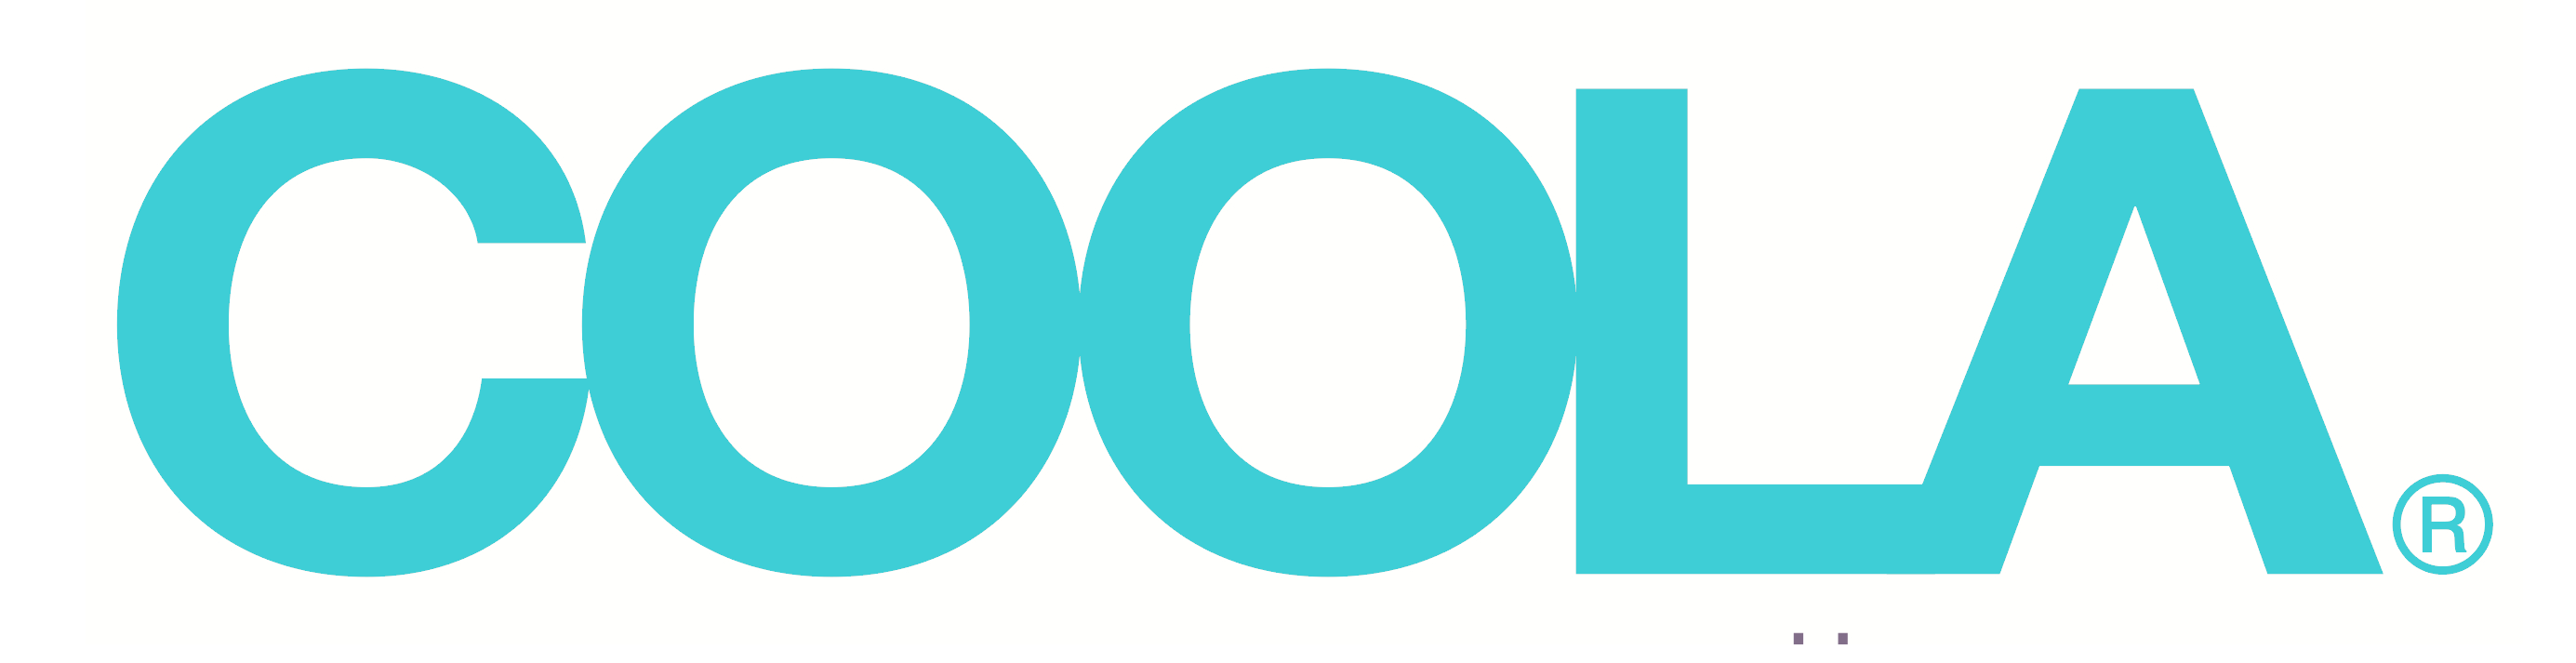 Coola_logo_logotype